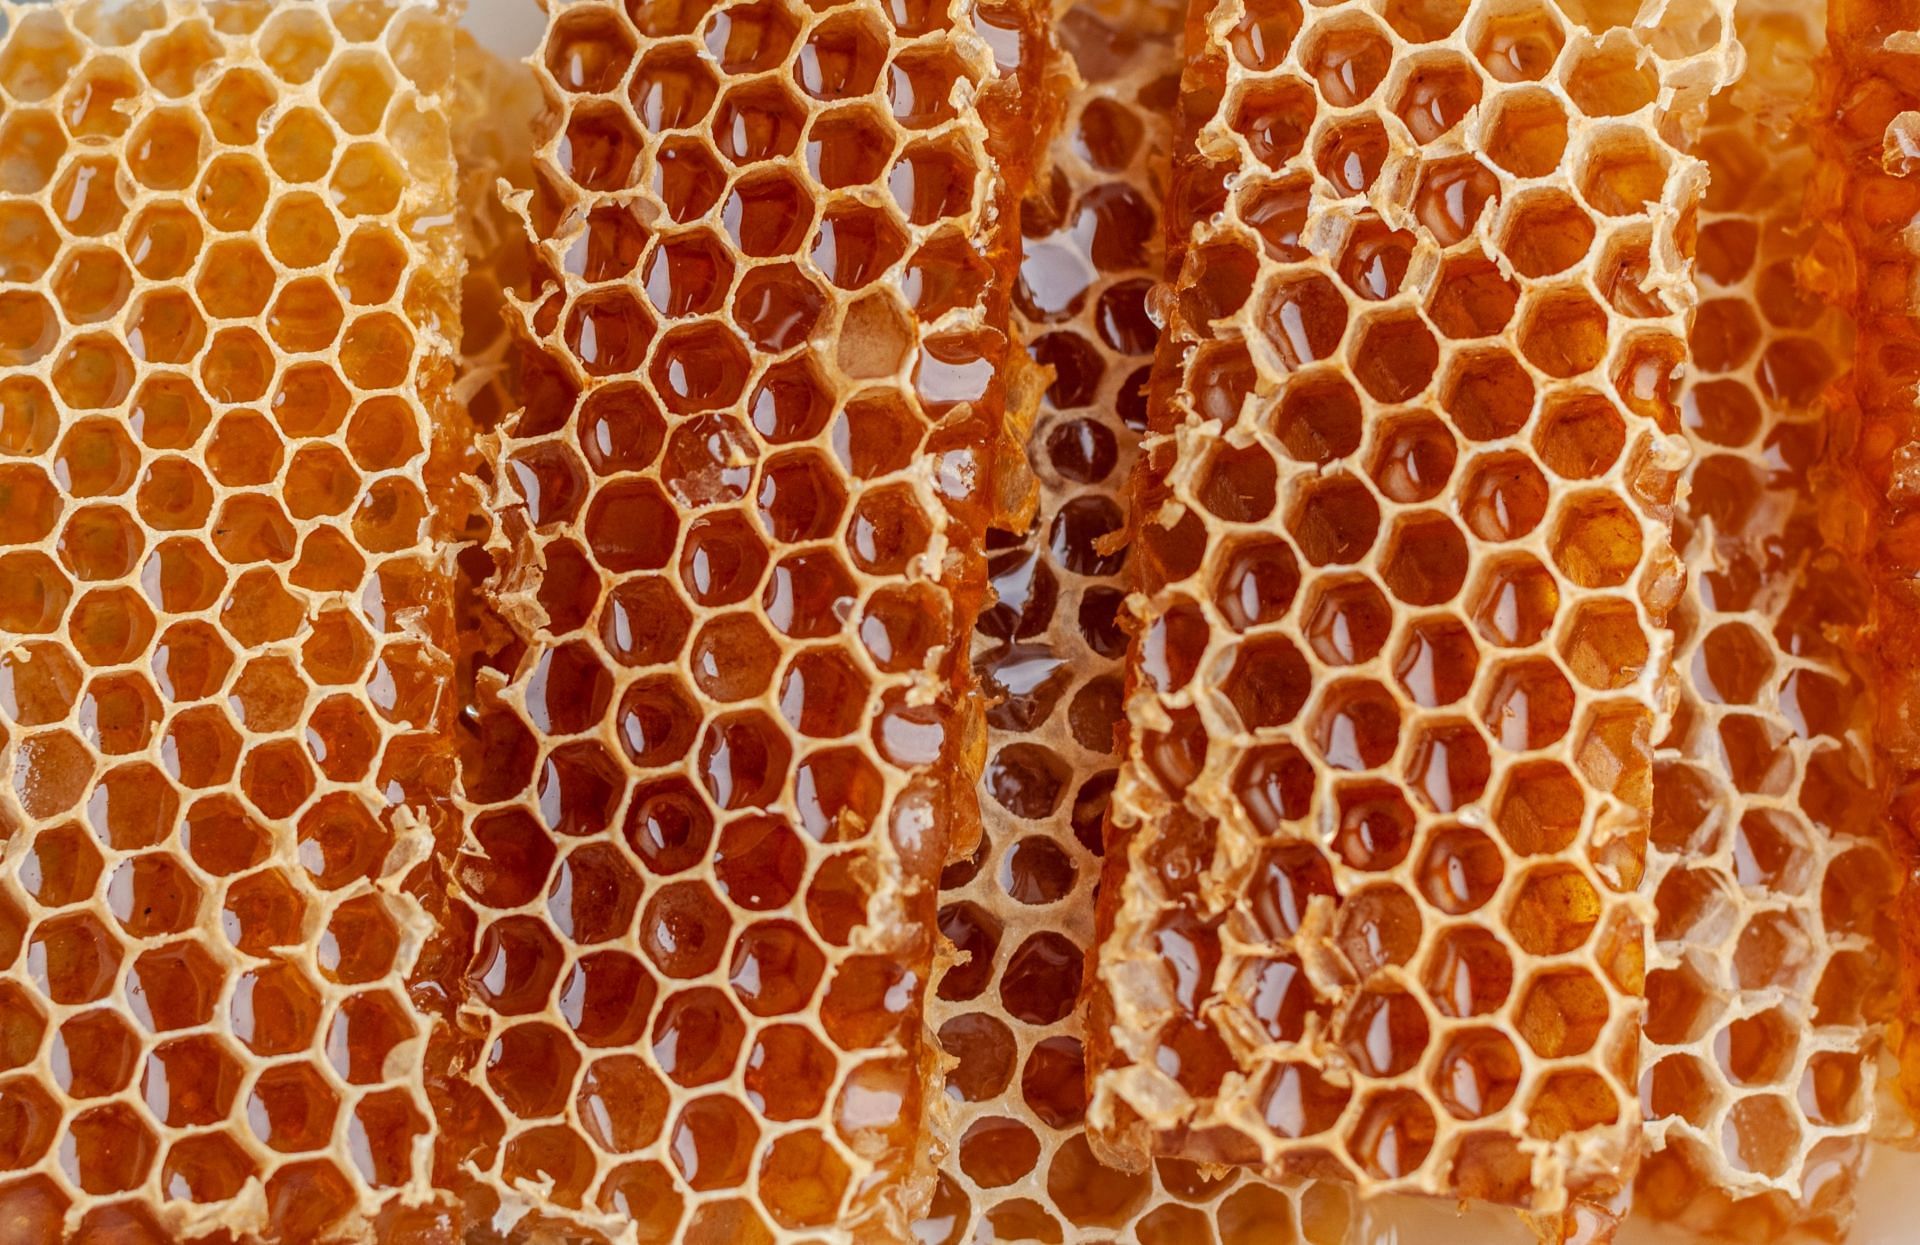 Honey (Image via Unsplash/Cristina)